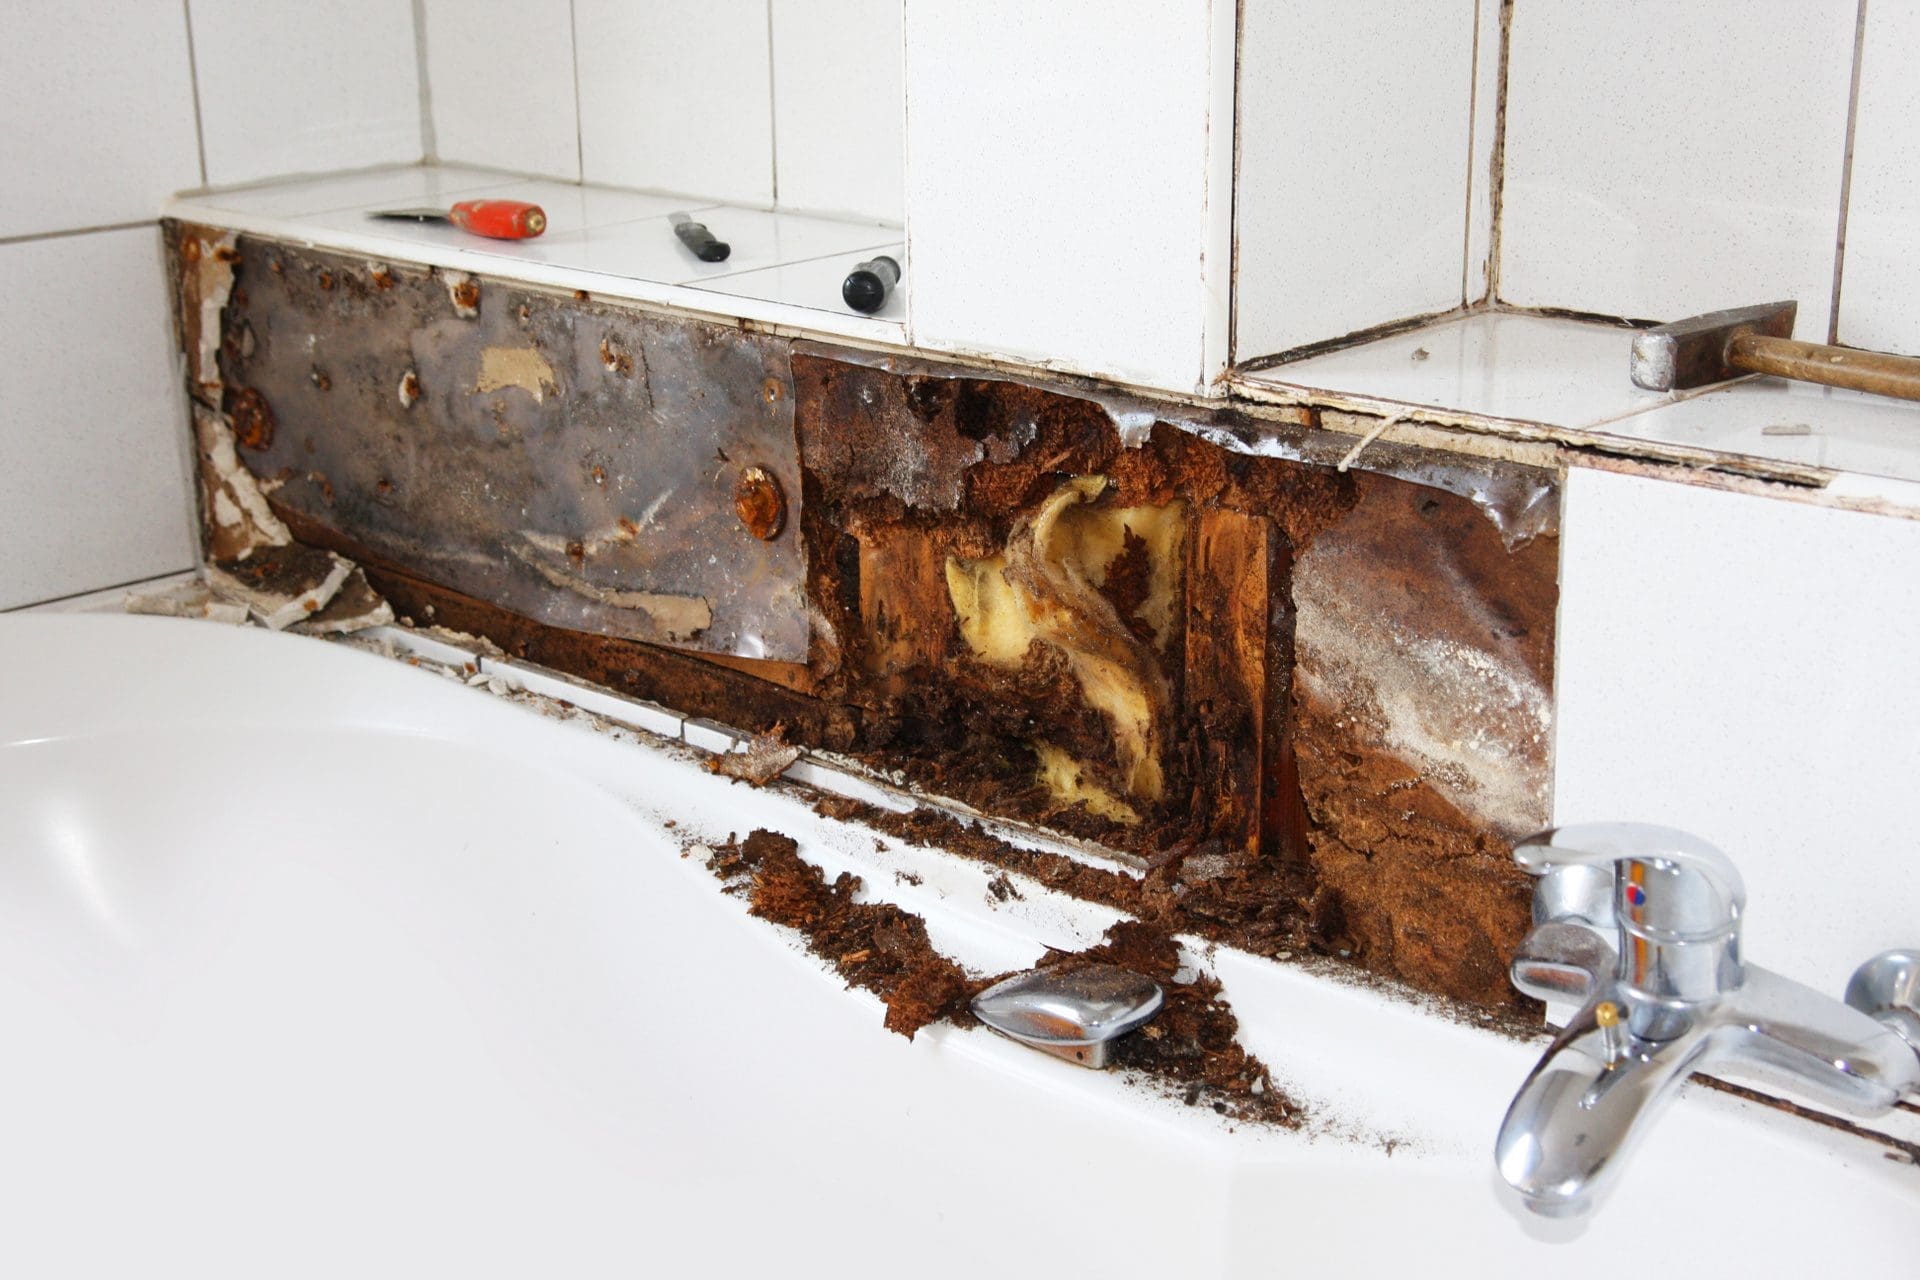 Wasserschaden nach Rohrbruch im Badezimmer - Was zahlt die Versicherung (© Heiko Barth / stock.adobe.com)